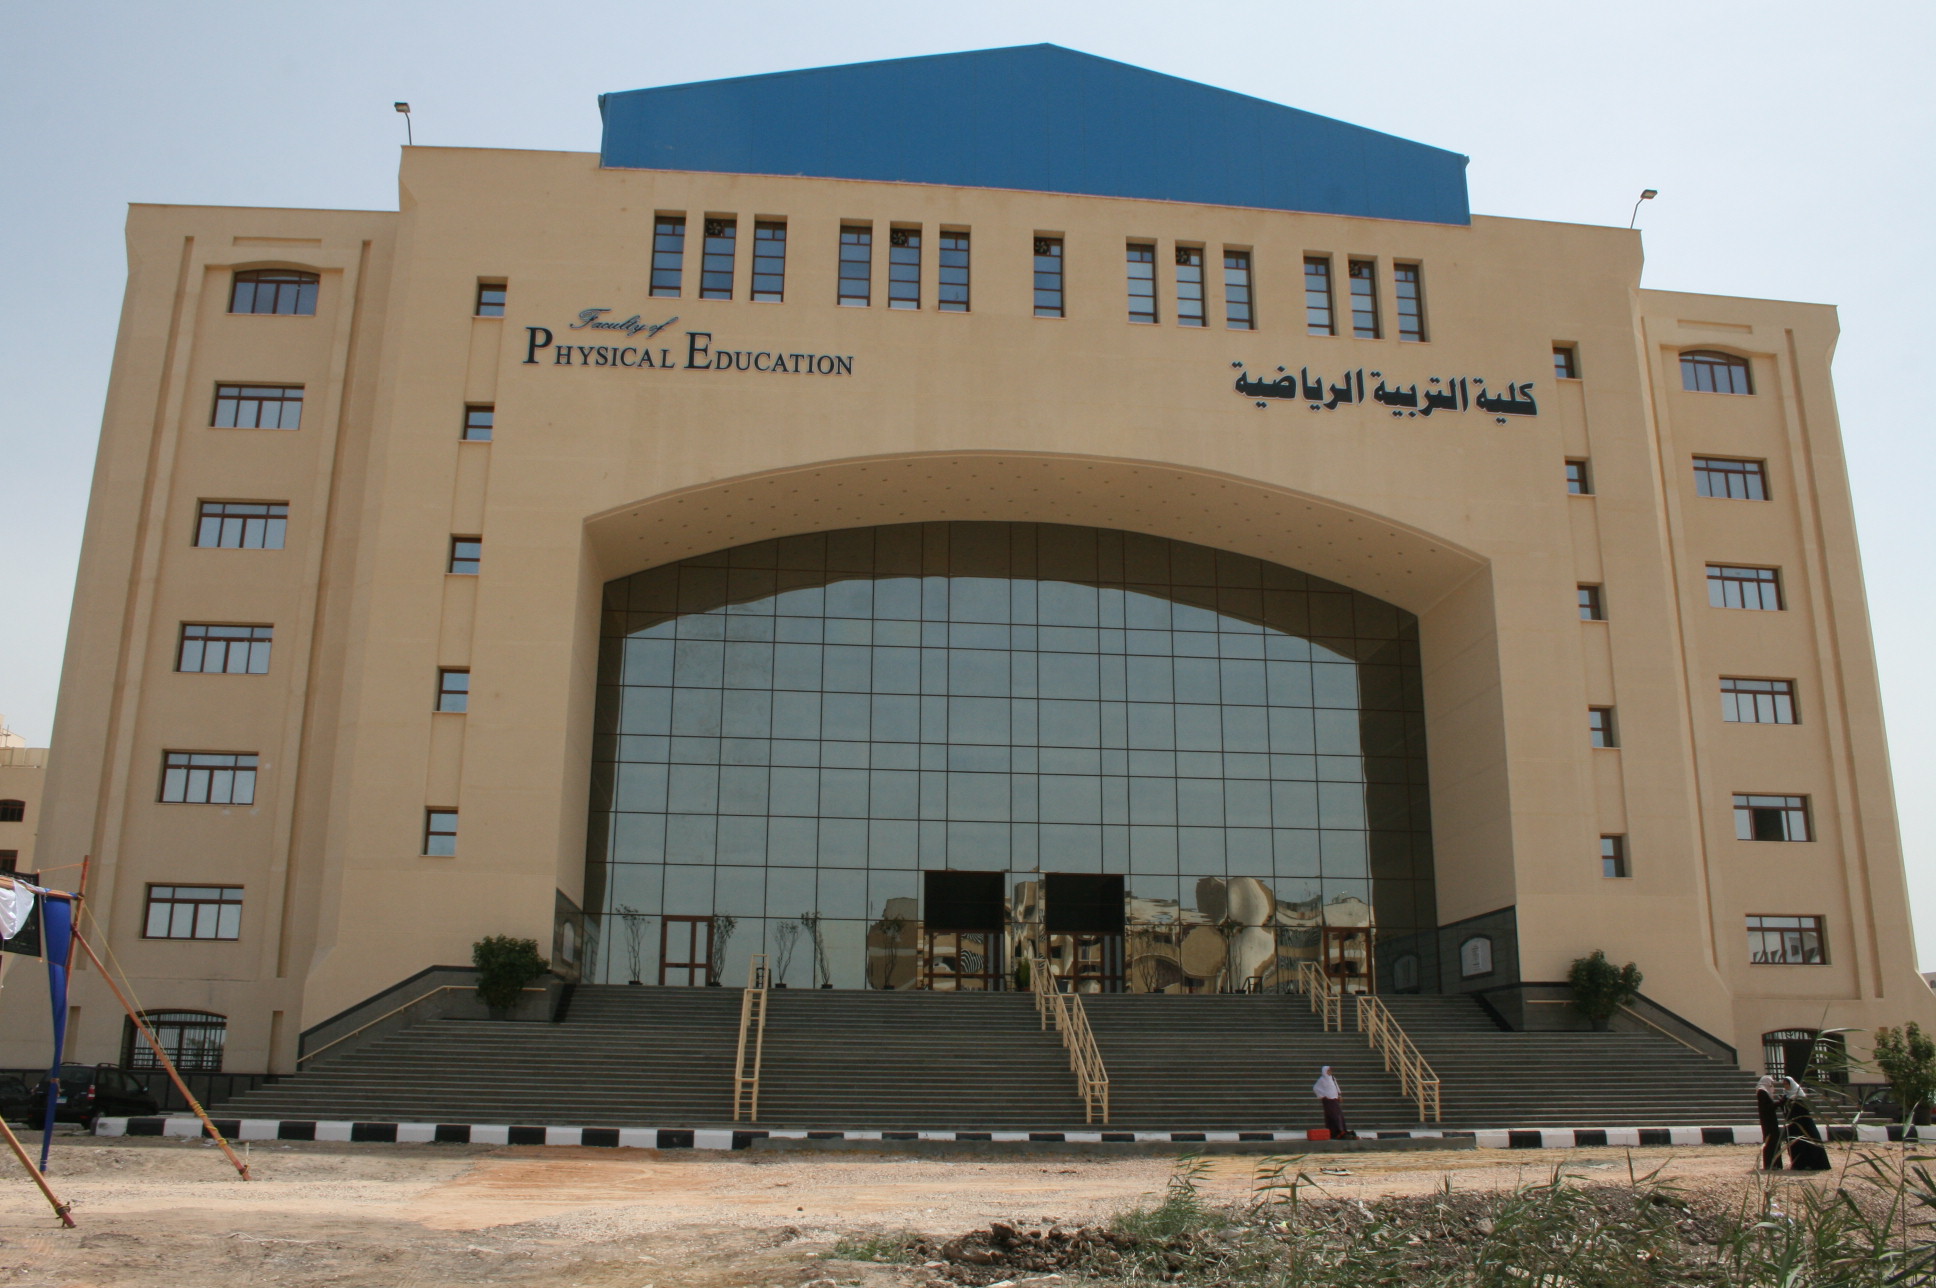  تفعيل أسبوع كليات التربية الرياضية و تنظيم رحلات للطلاب بجامعة كفر الشيخ